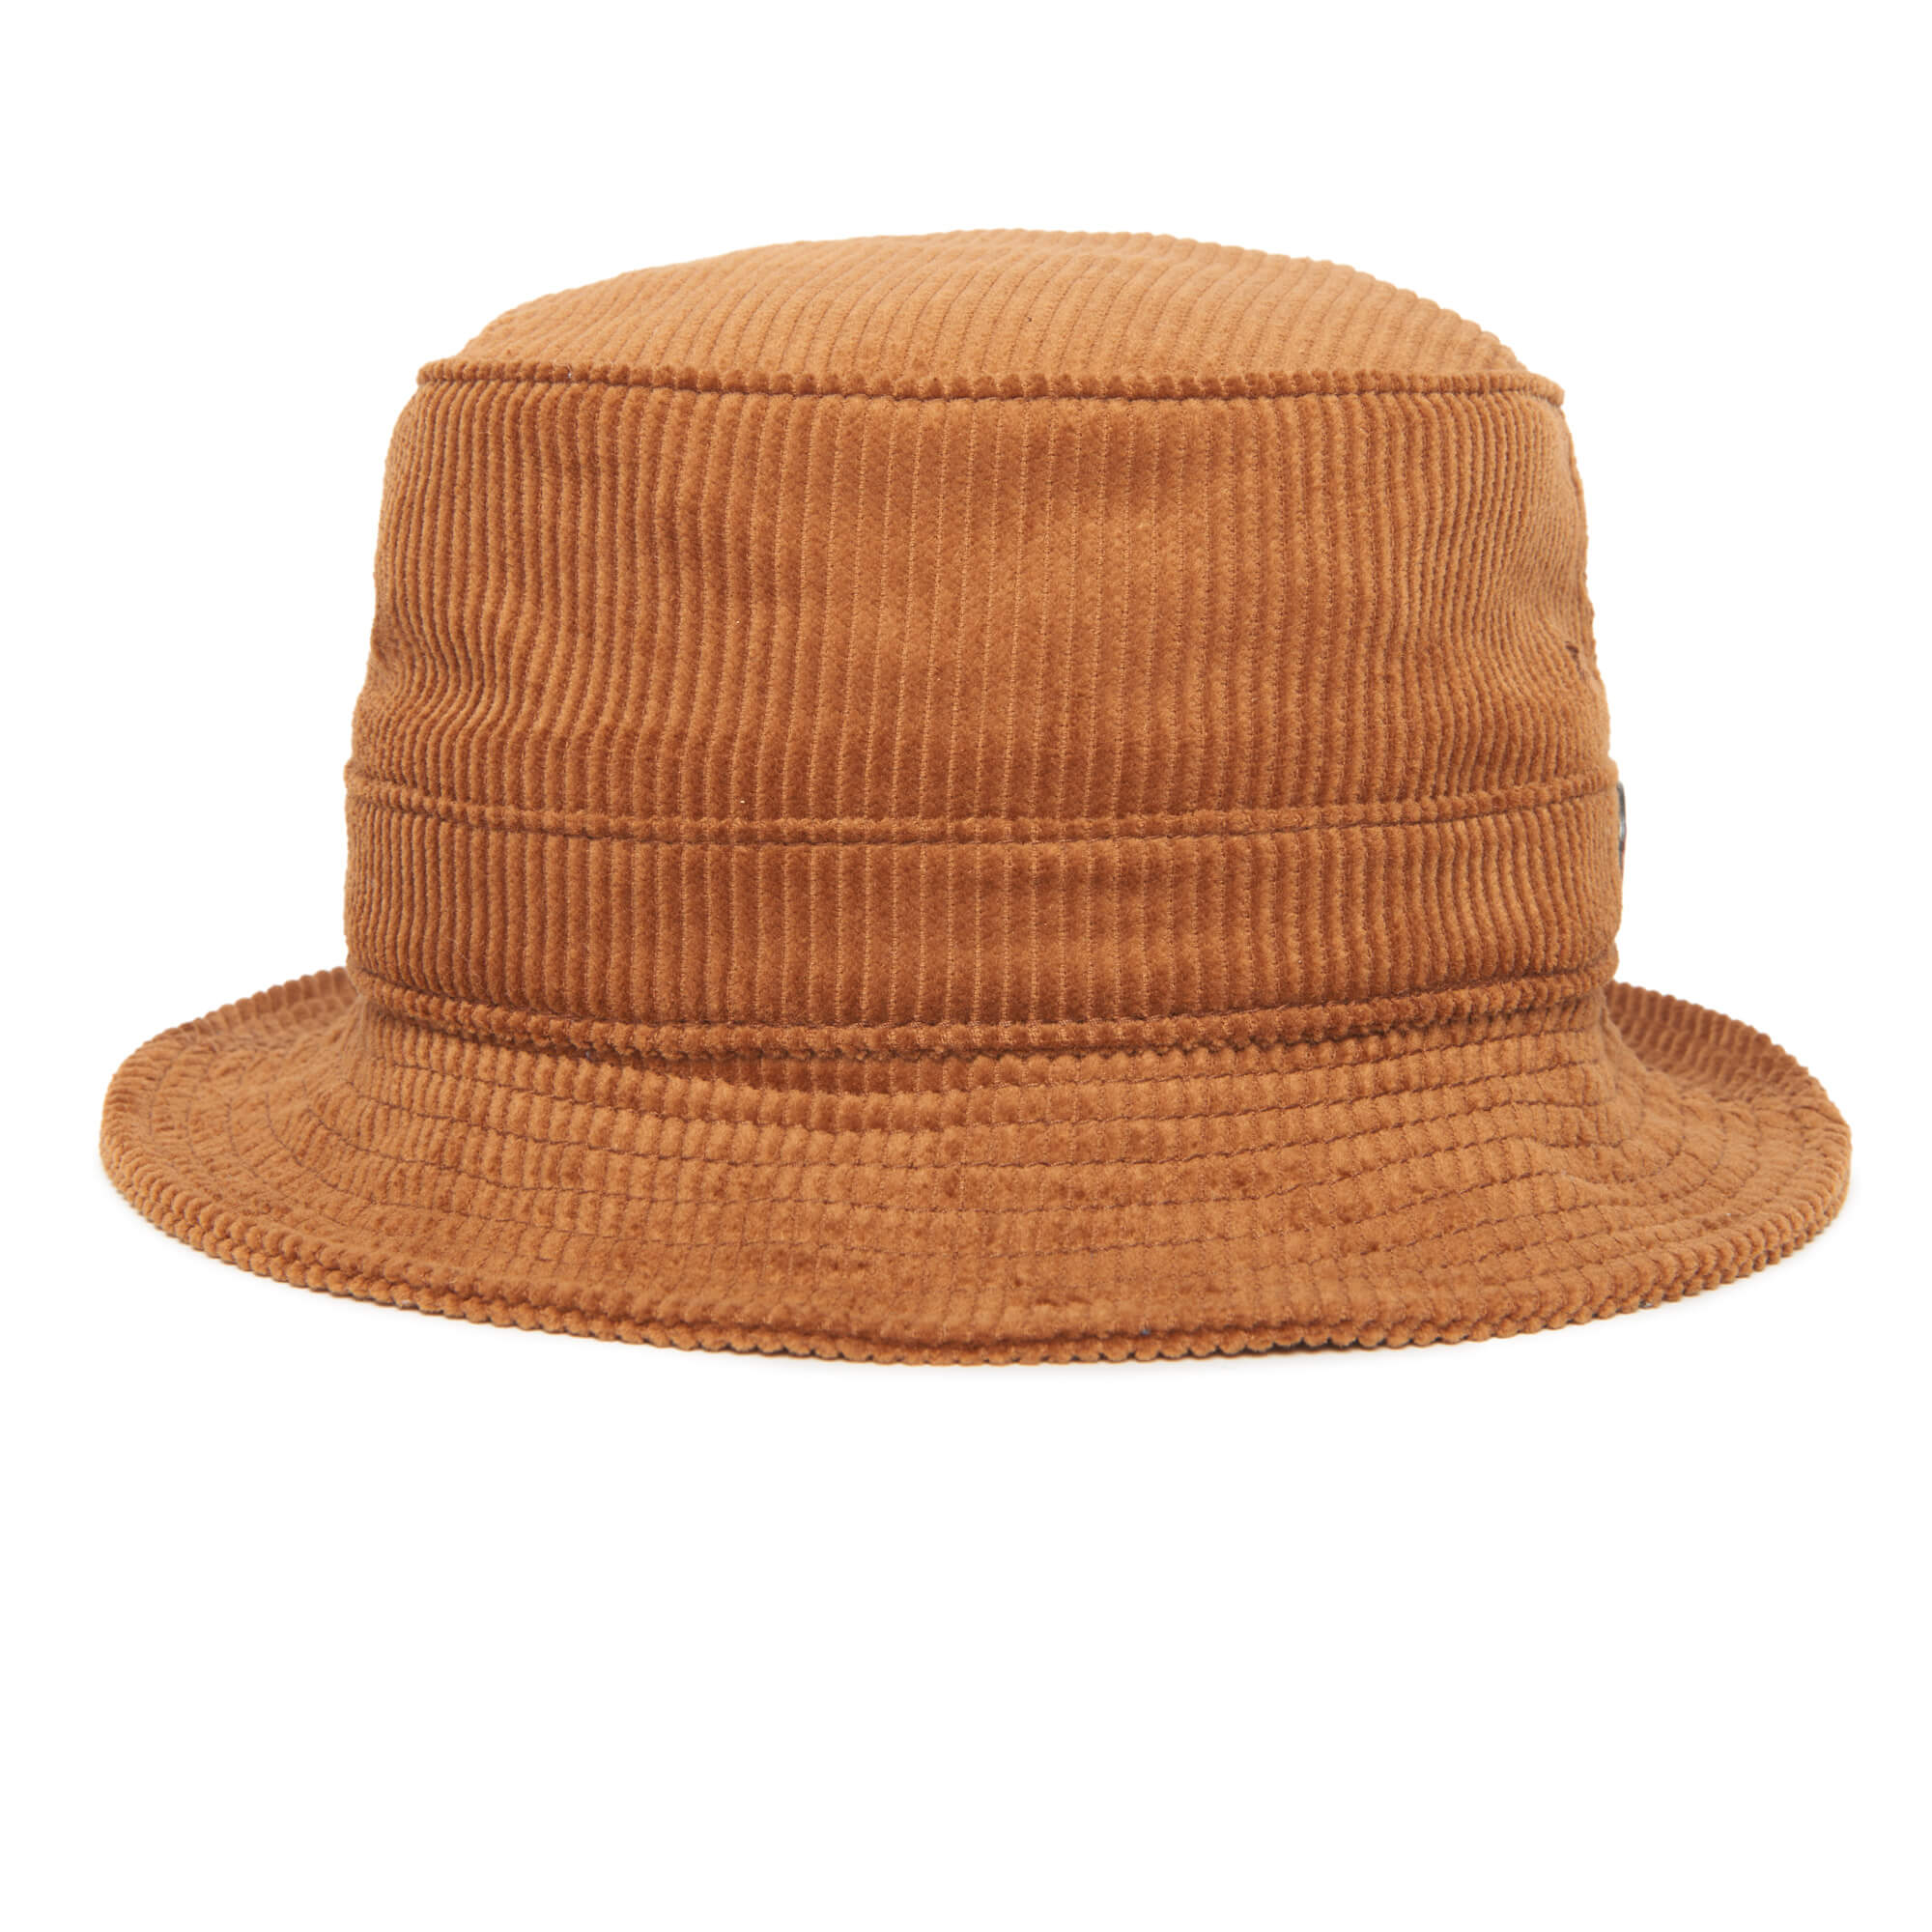 Men's Goorin Bros. Hats, Beanies & Bucket Hats